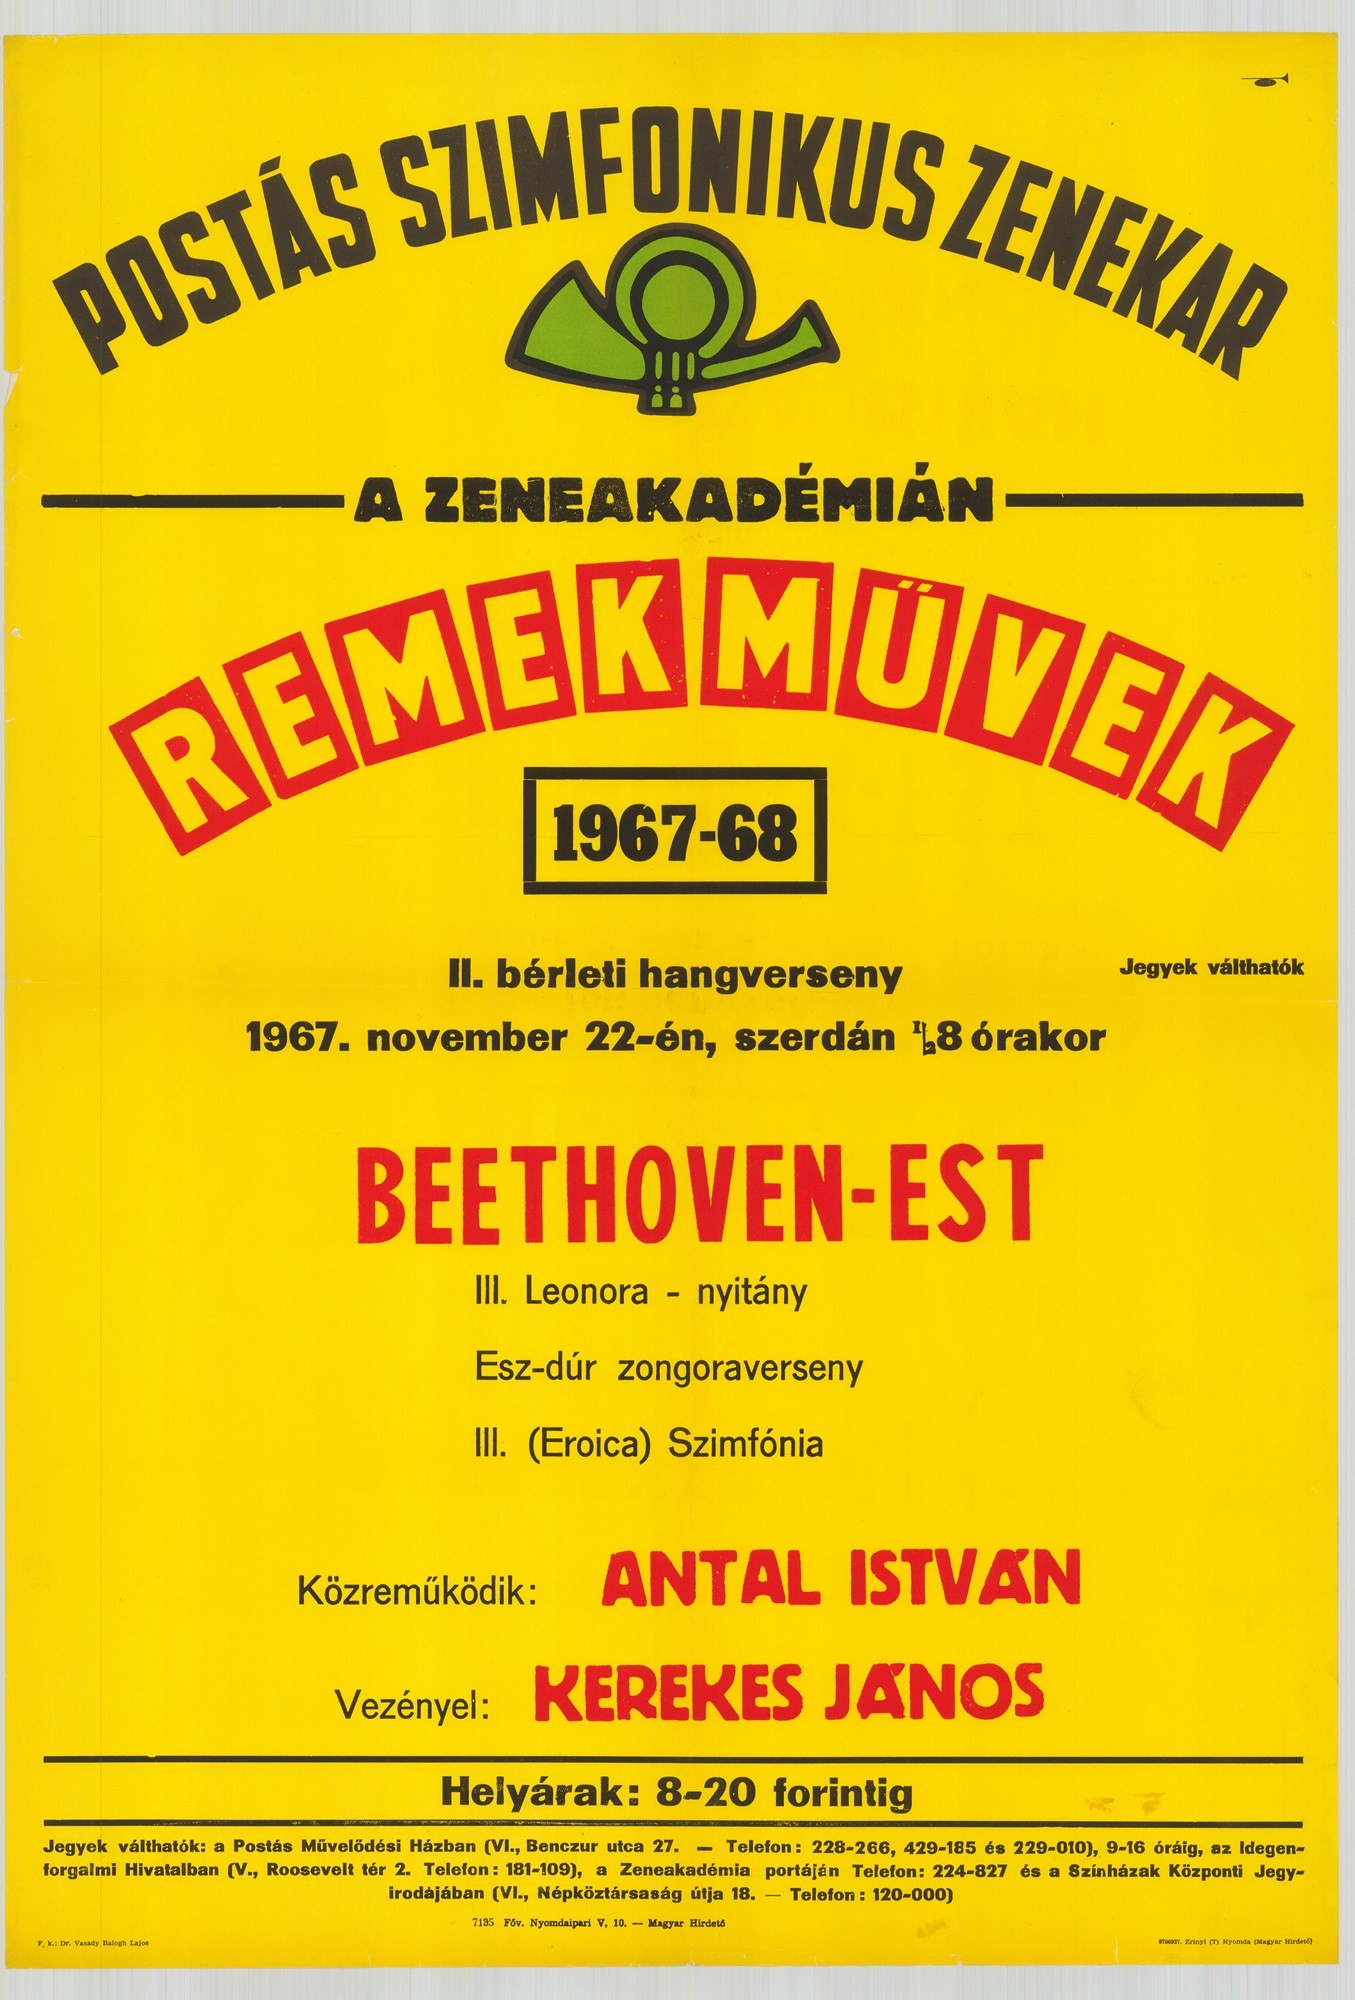 Plakát - Postás Szimfonikus Zenekar a Zeneakadémián, Remekművek, 1967-68 (Postamúzeum CC BY-NC-SA)